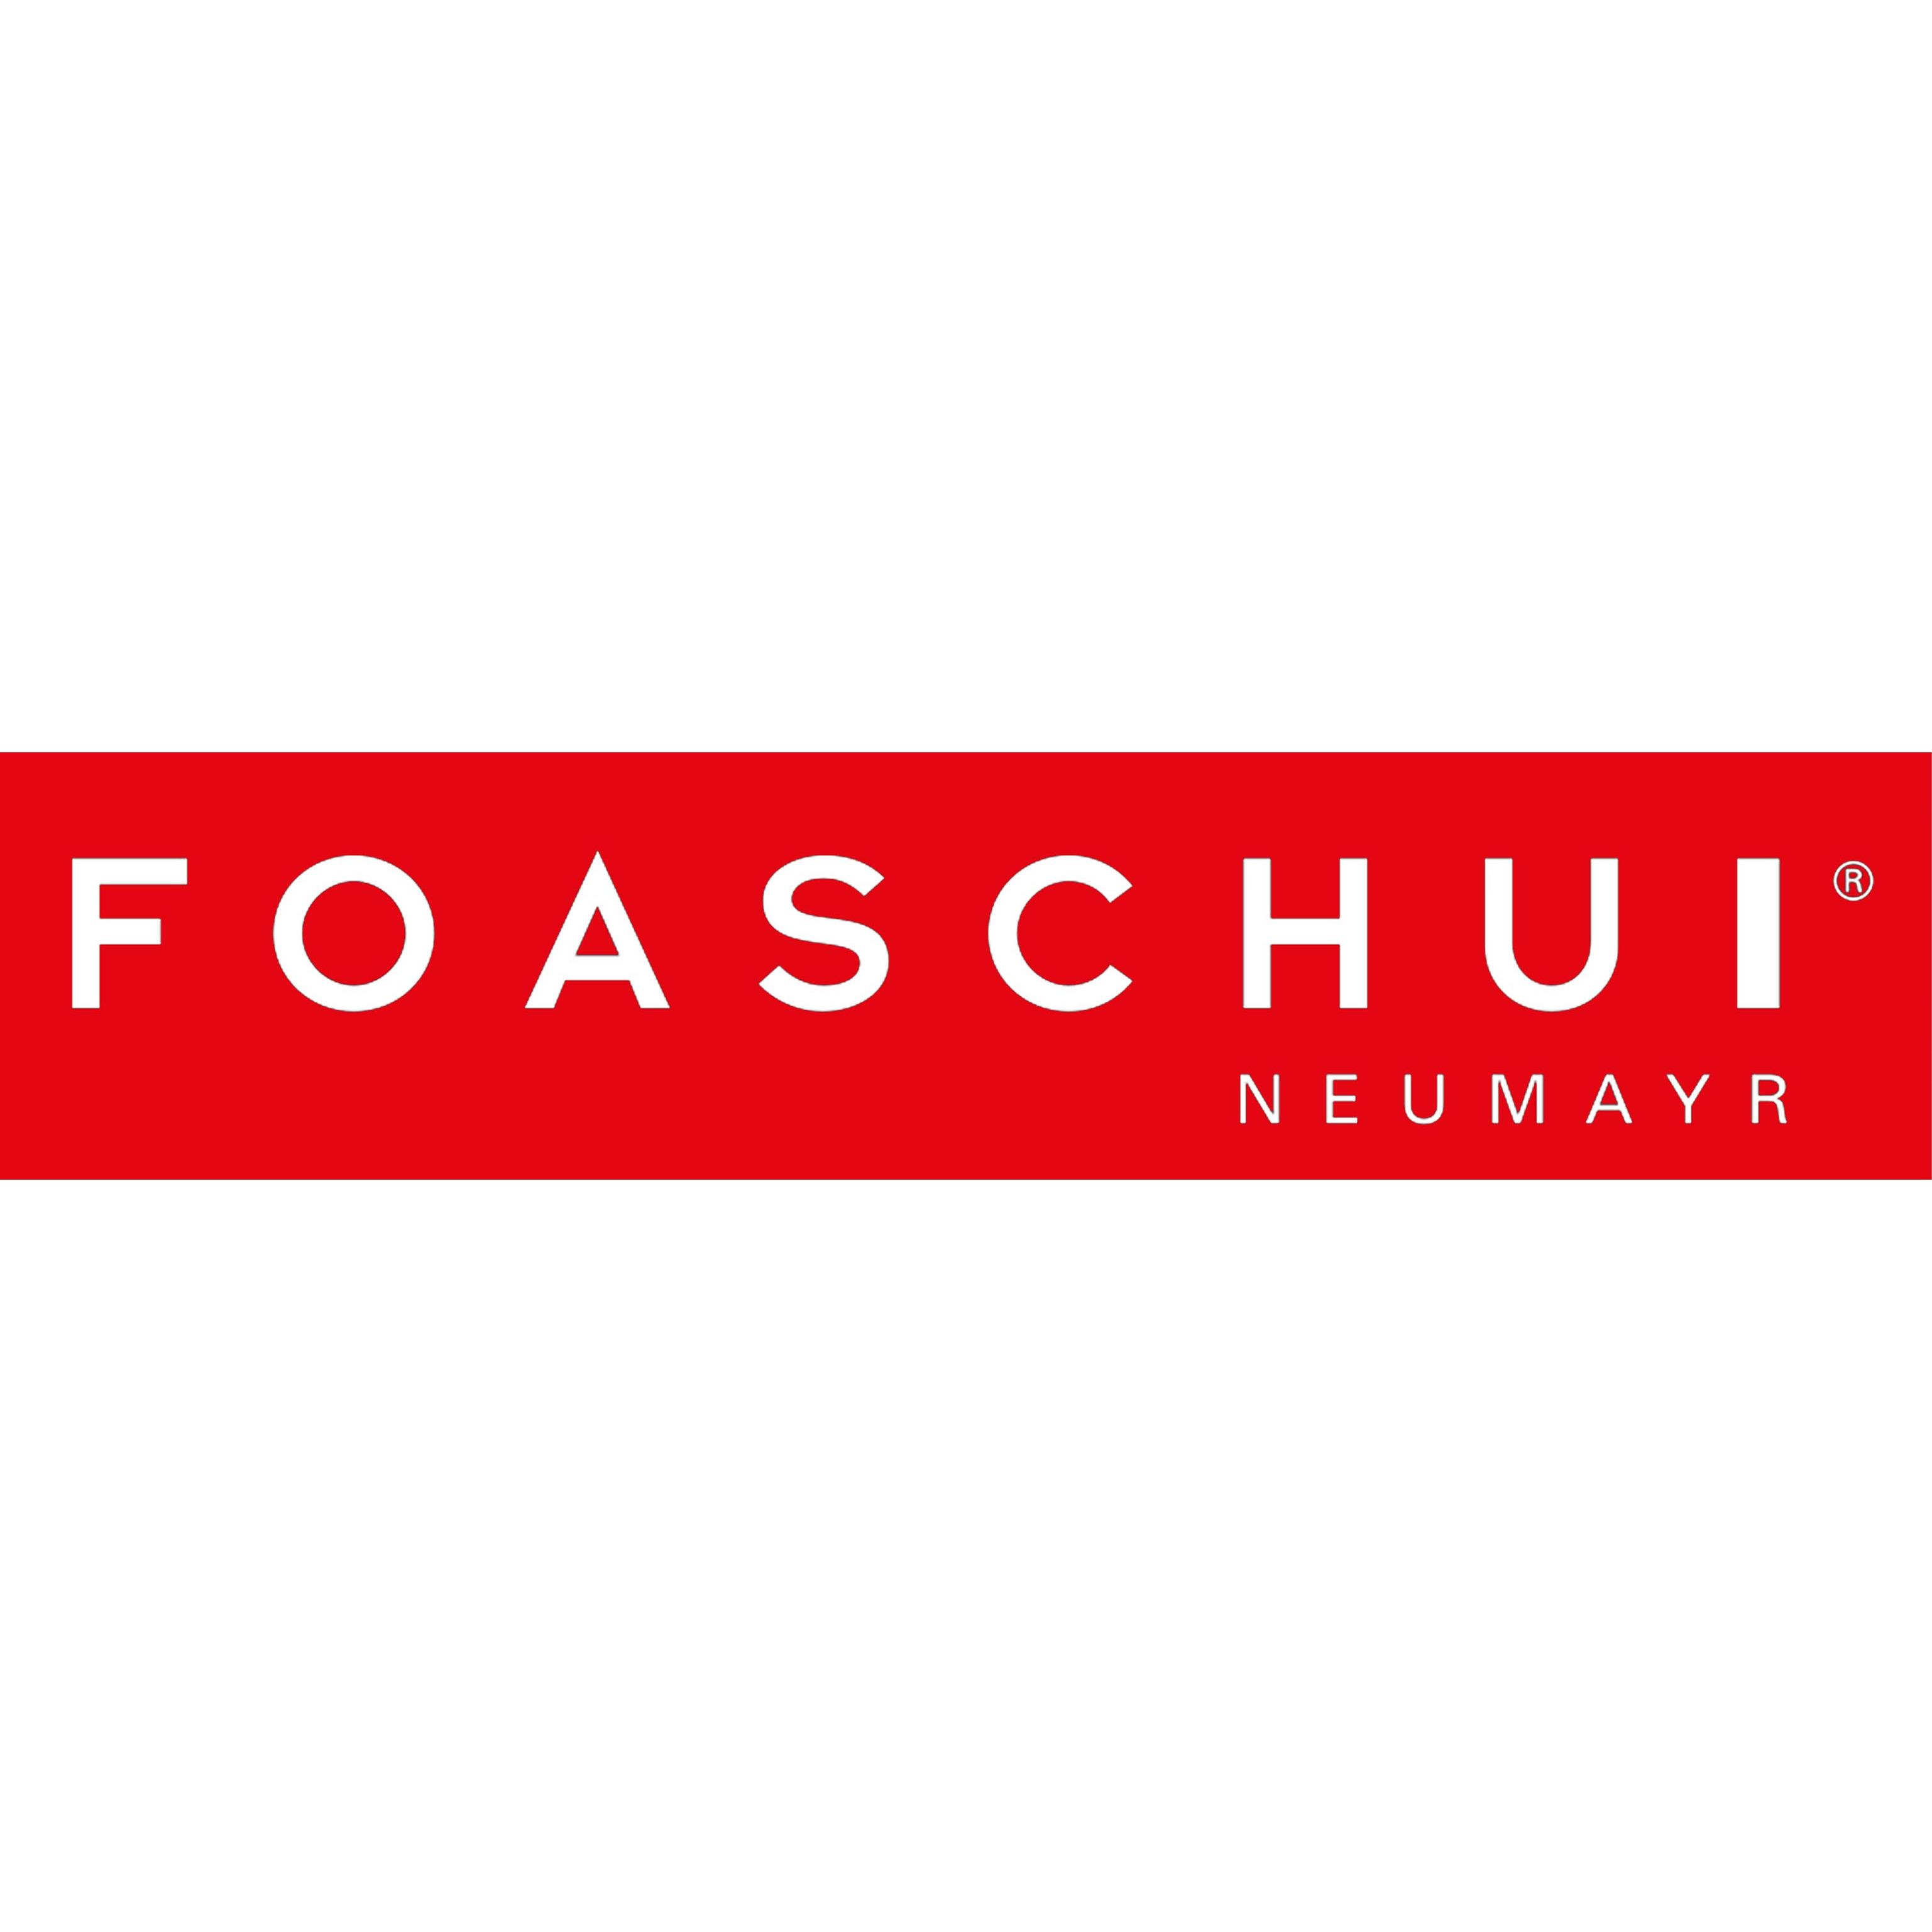 Fahrschule Neumayr - FOASCHUI Logo